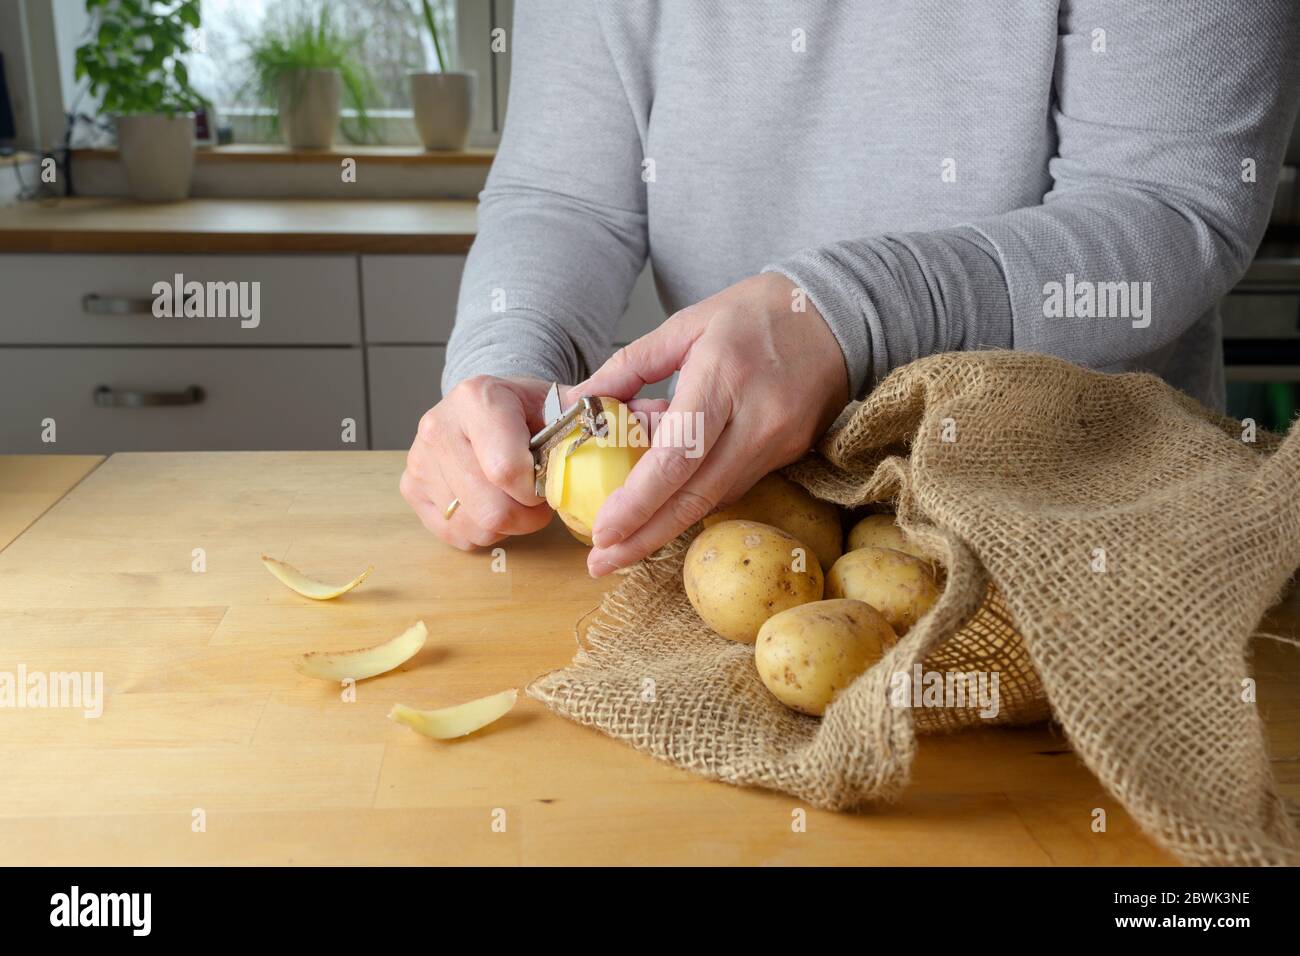 Les mains d'une femme éplucher des pommes de terre crues sur une table en bois dans la cuisine à la maison, foyer choisi, profondeur de champ étroite Banque D'Images